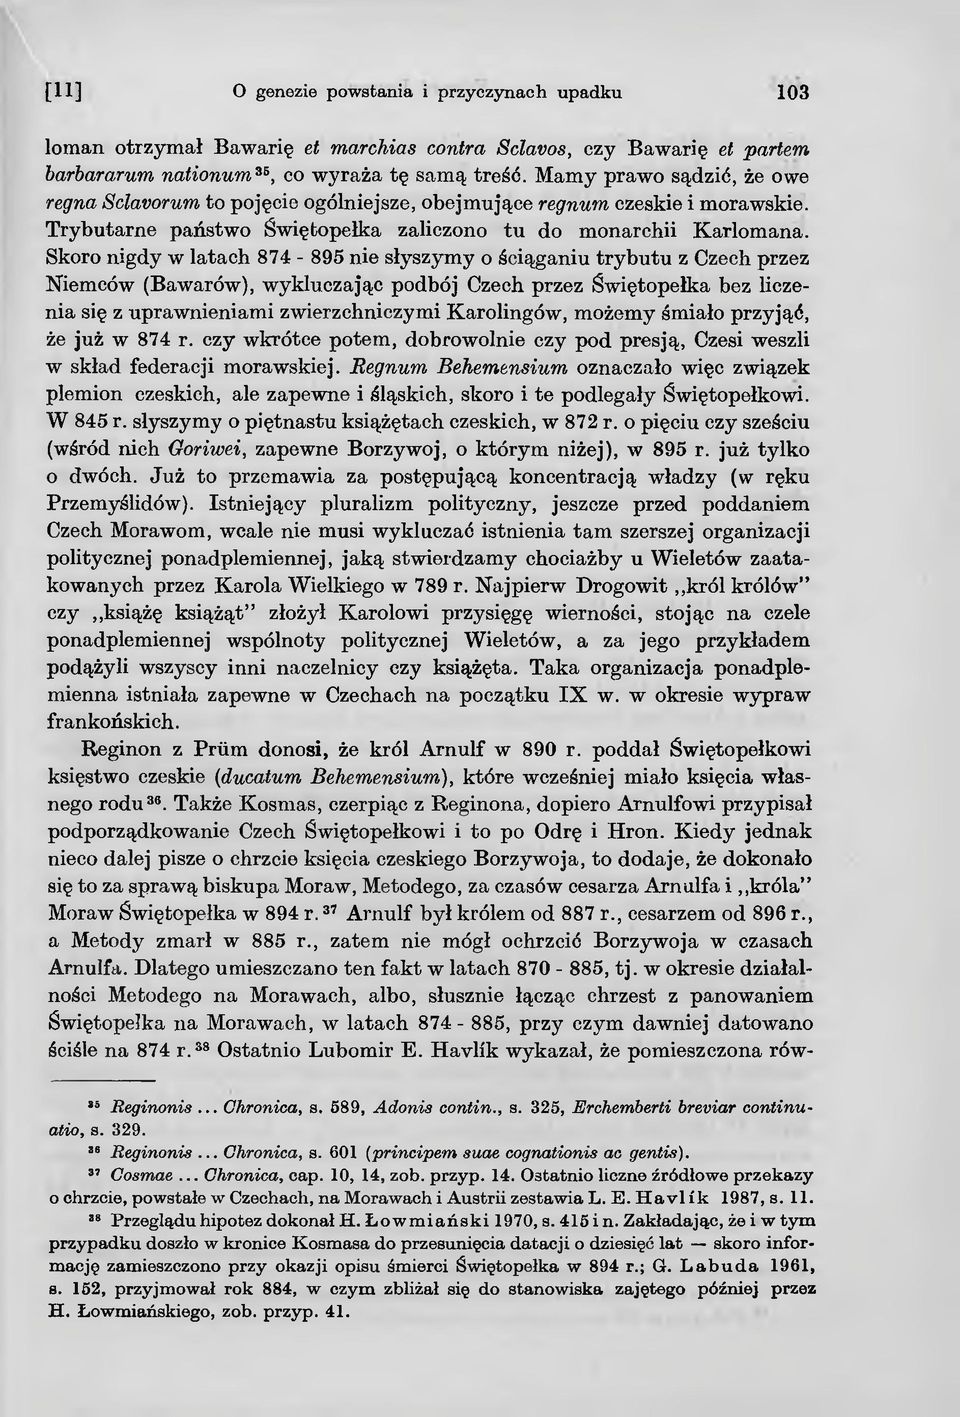 Skoro nigdy w latach 874-895 nie słyszymy o ściąganiu trybutu z Czech przez Niemców (Bawarów), wykluczając podbój Czech przez Świętopełka bez liczenia się z uprawnieniami zwierzchniczymi Karolingów,